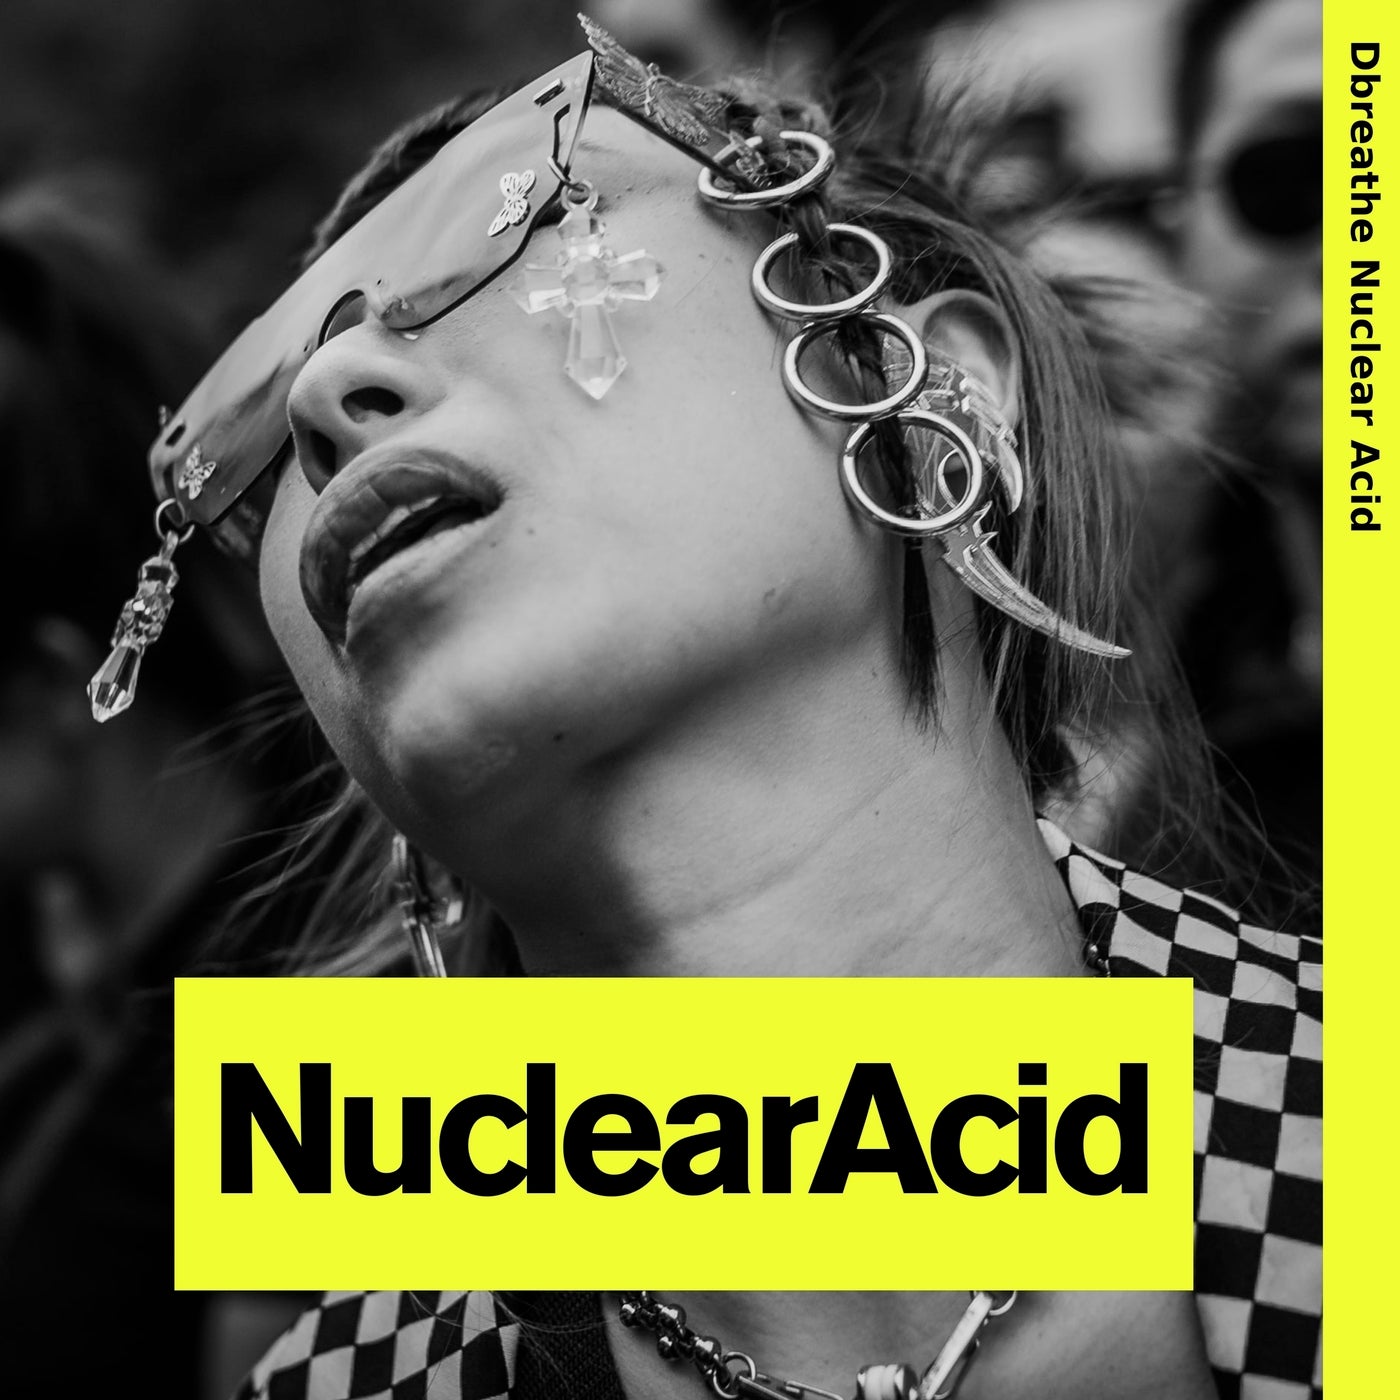 Nuclear Acid